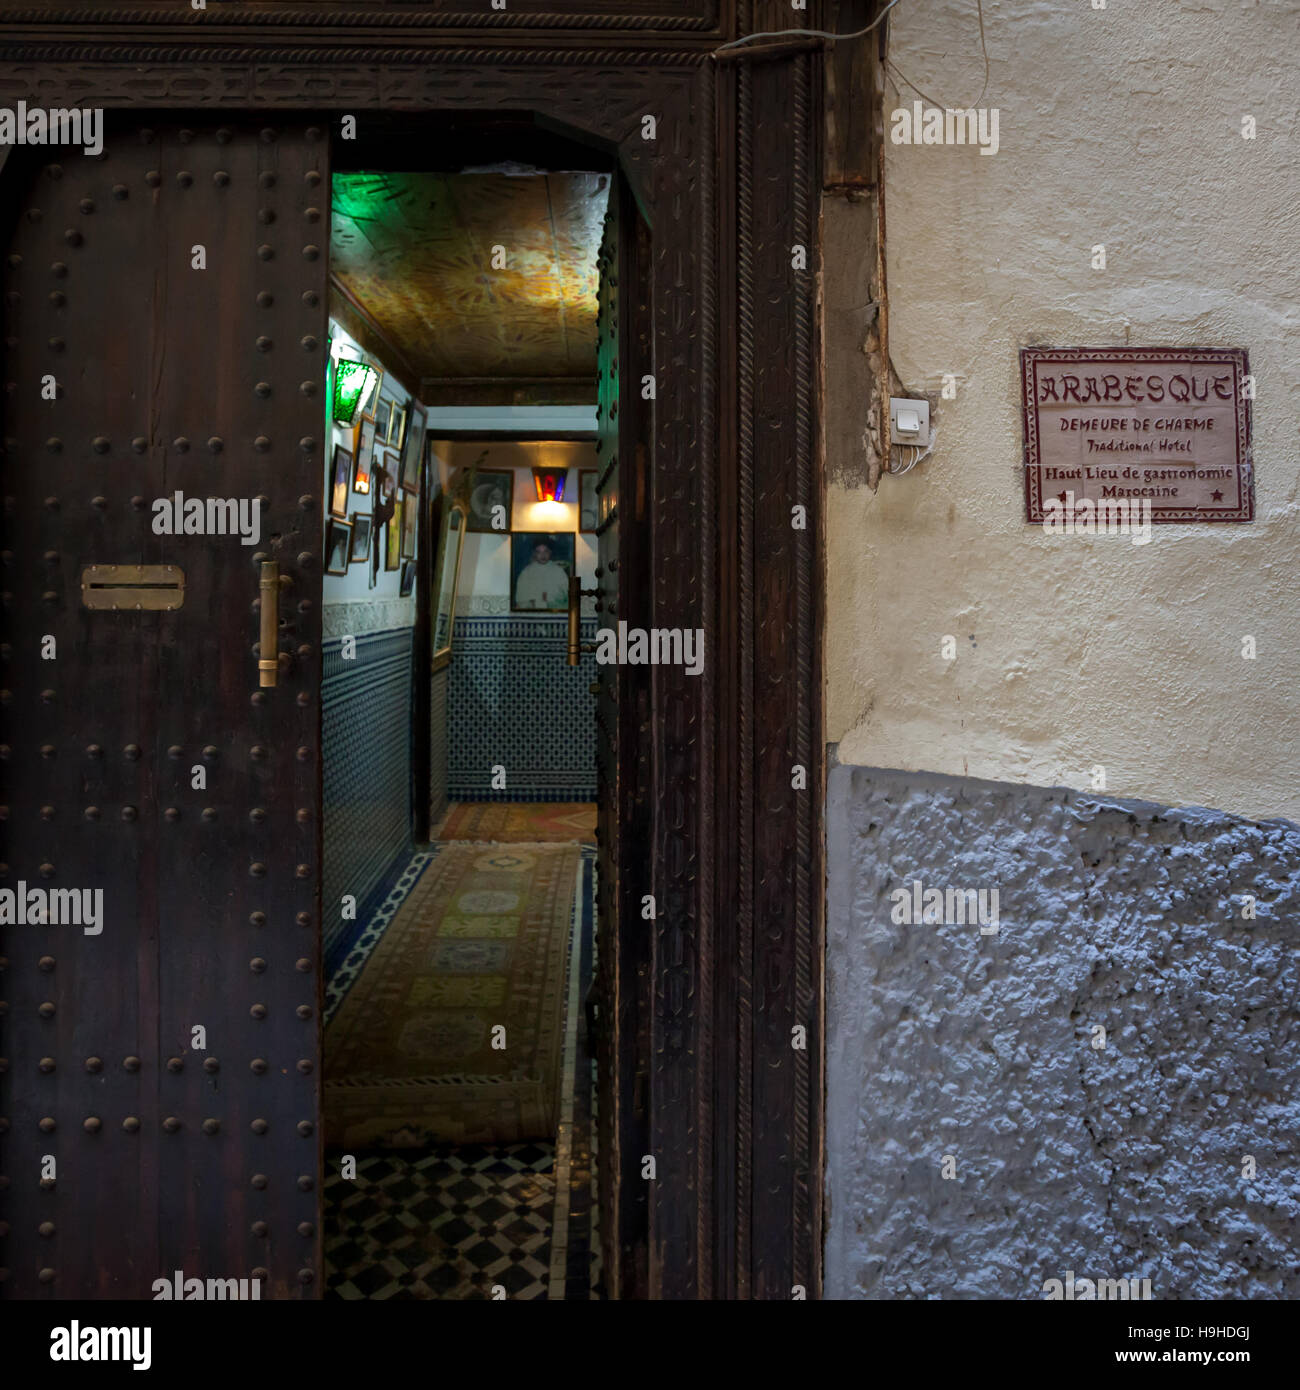 Eingang des Riad Arabesque, Fès, Marokko. Ein dunkler Eingang an einer verbietenden Wand lässt sogar Zweifel aufkommen, ob sich die Tür öffnet, wenn man die Glocke läutet Stockfoto